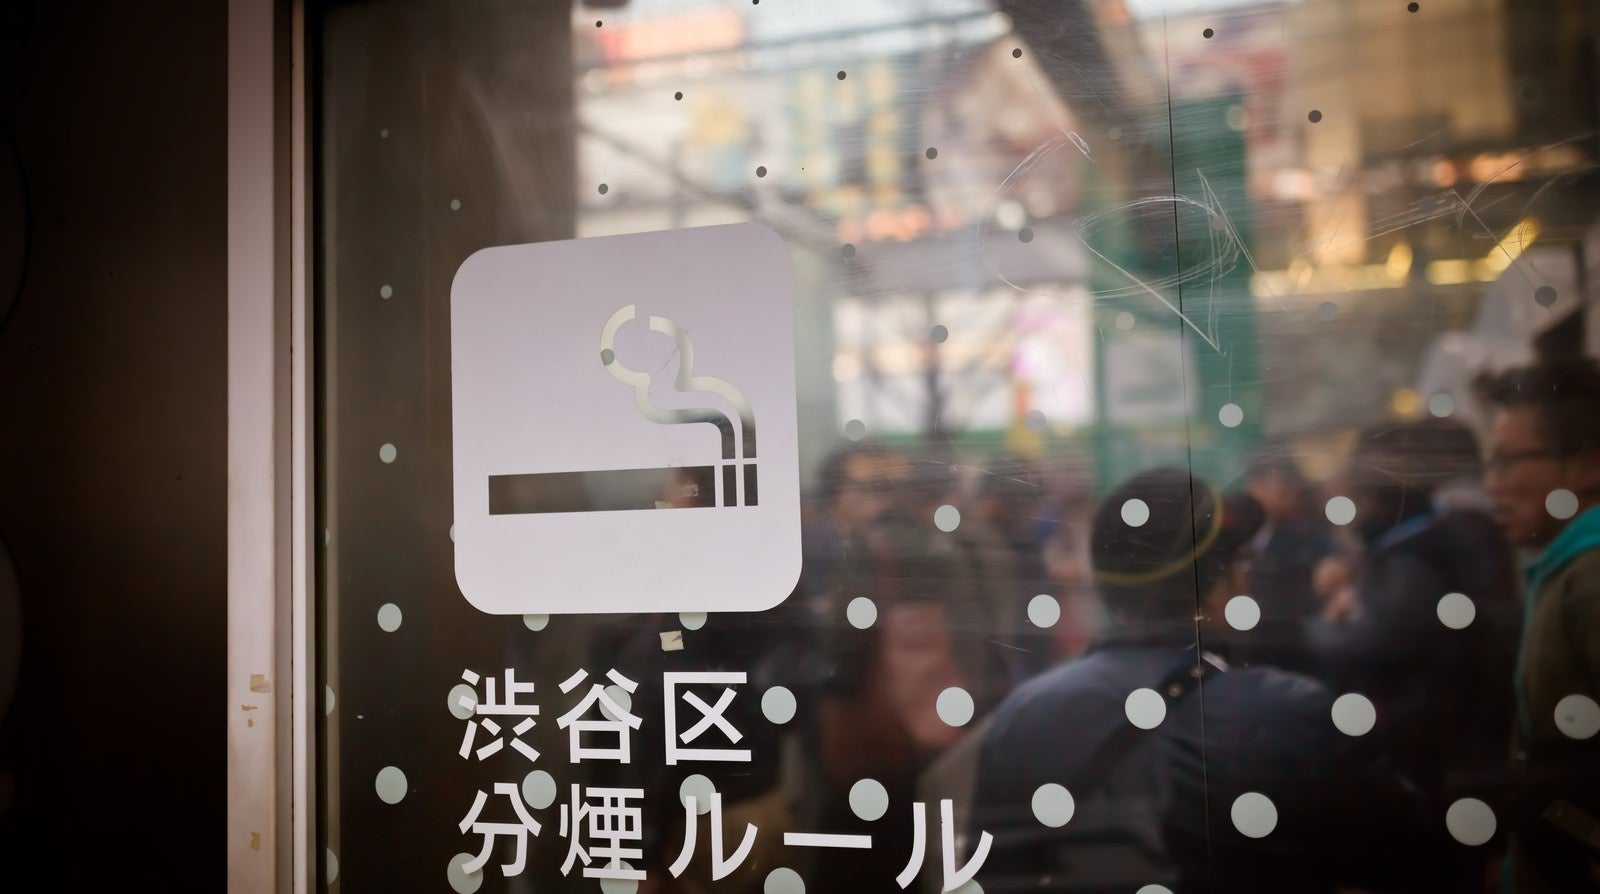 「渋谷区分煙ルール」の写真